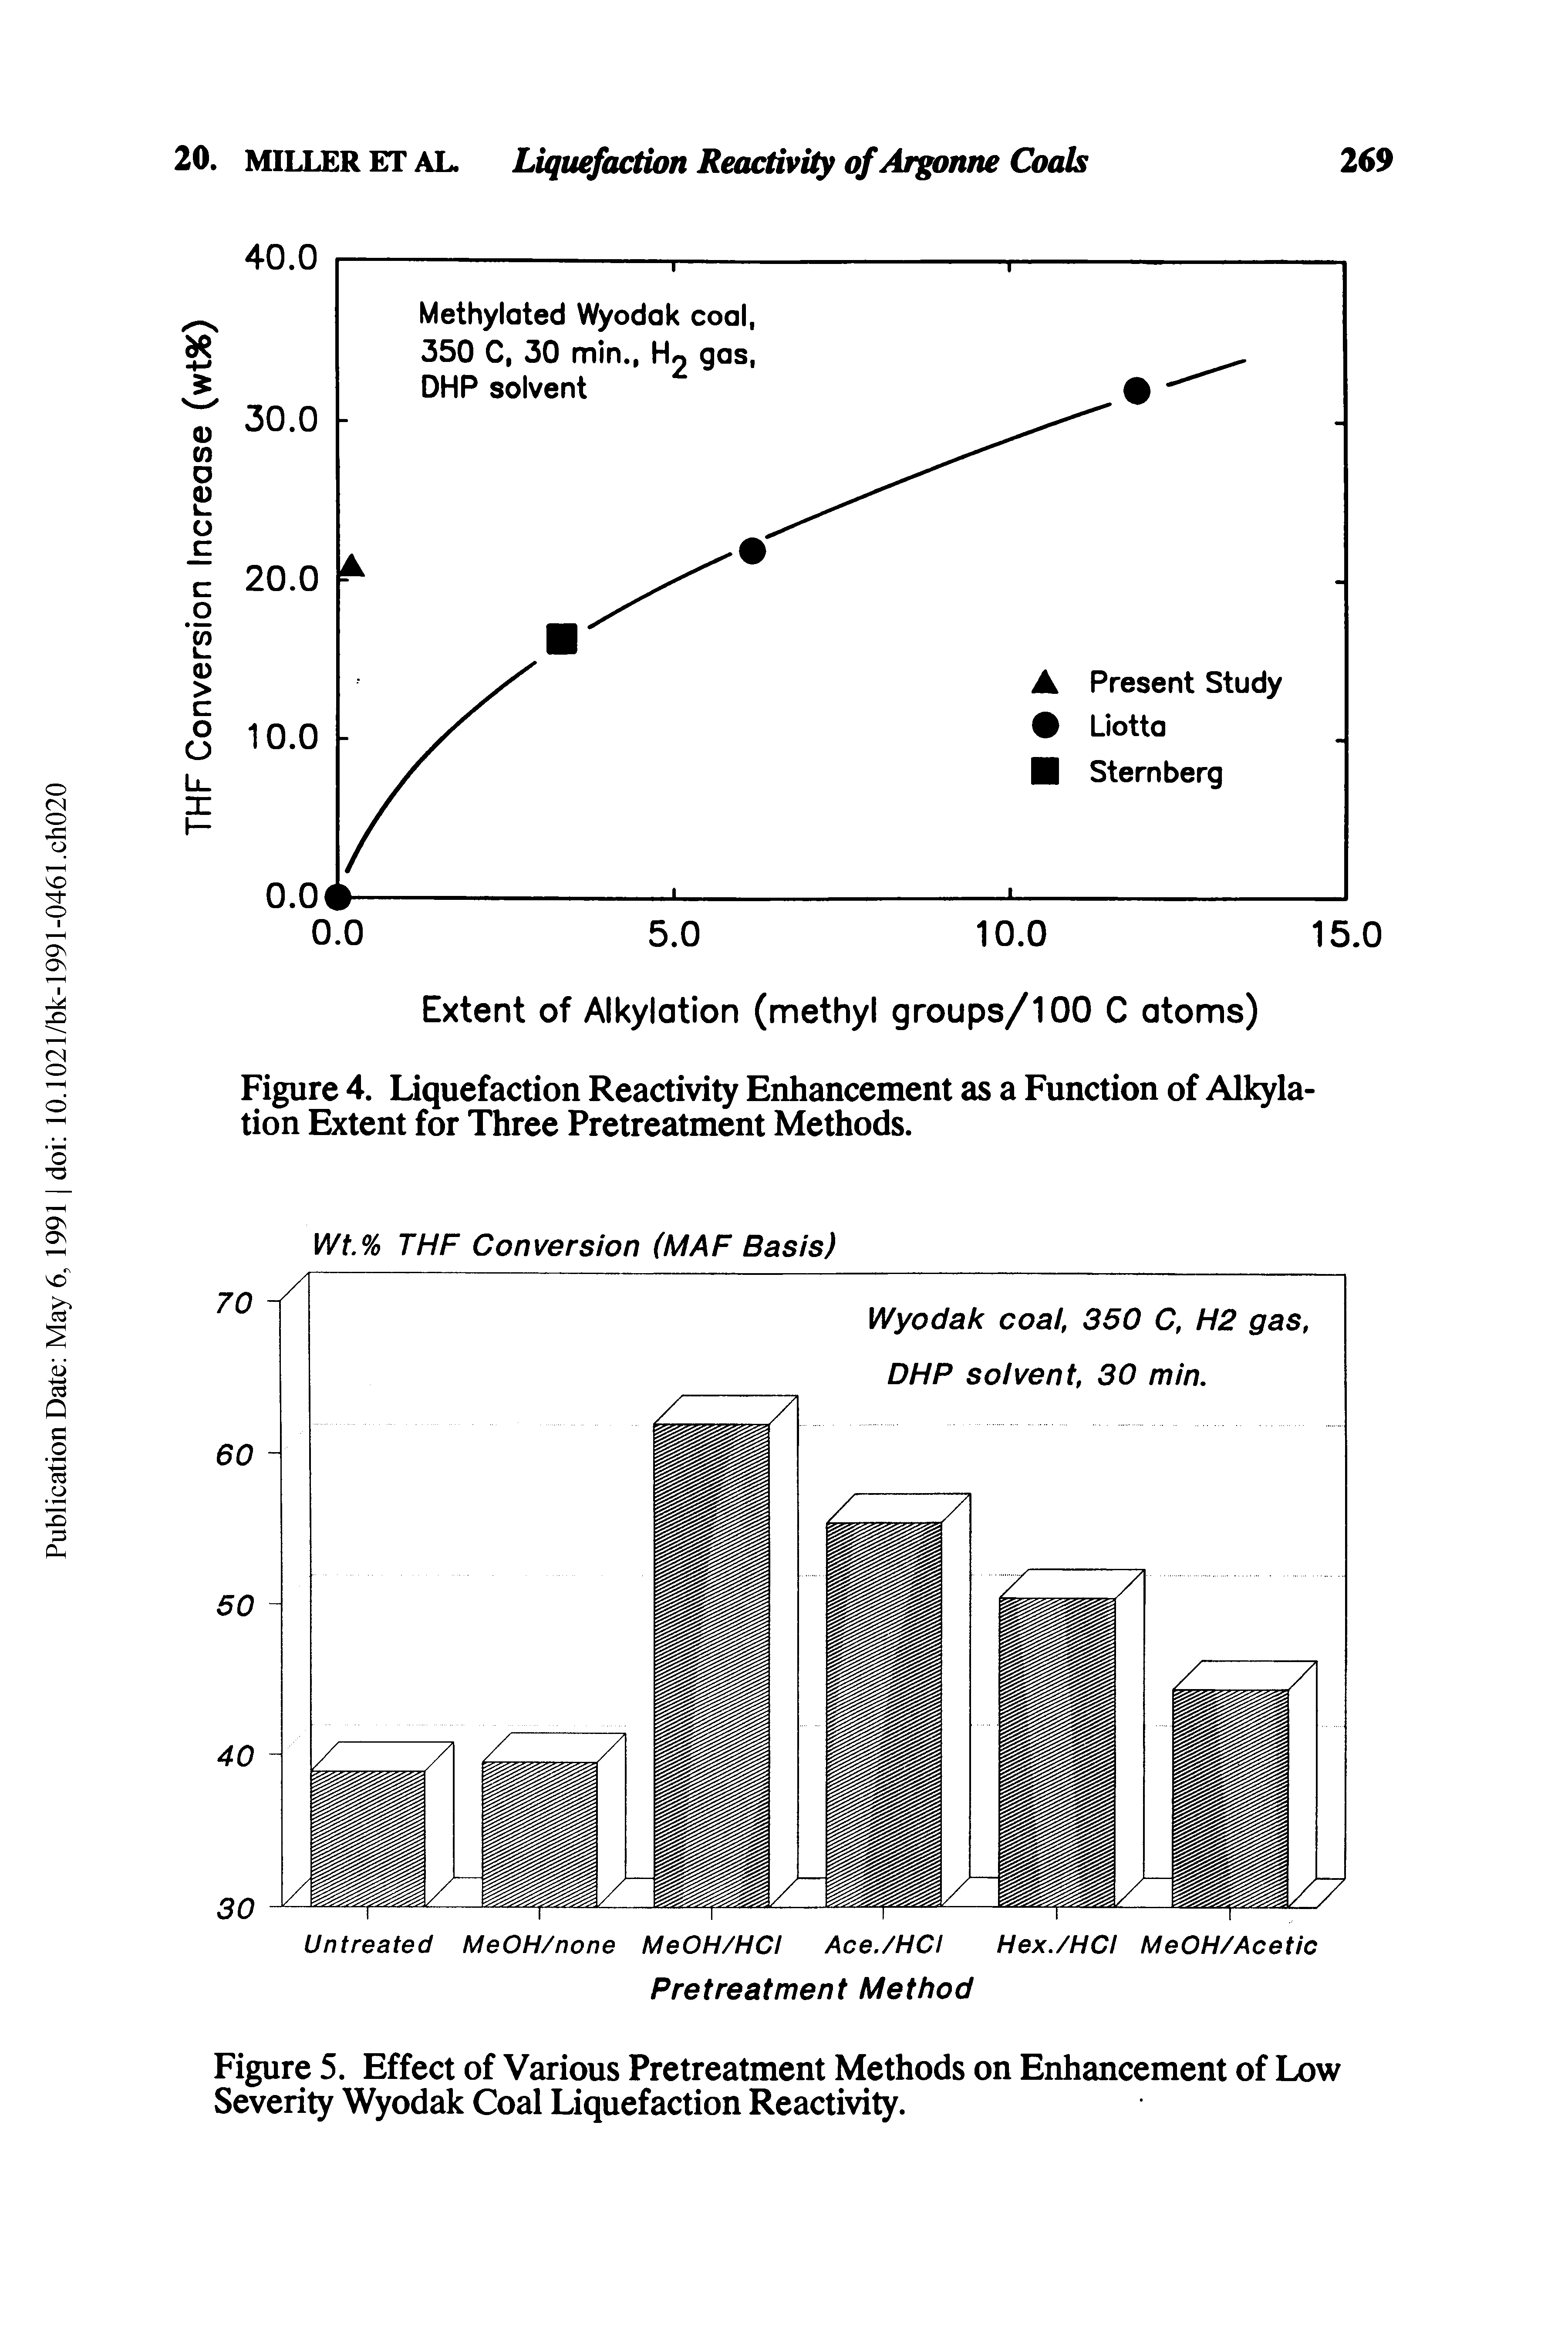 Figure 5. Effect of Various Pretreatment Methods on Enhancement of Low Severity Wyodak Coal Liquefaction Reactivity.